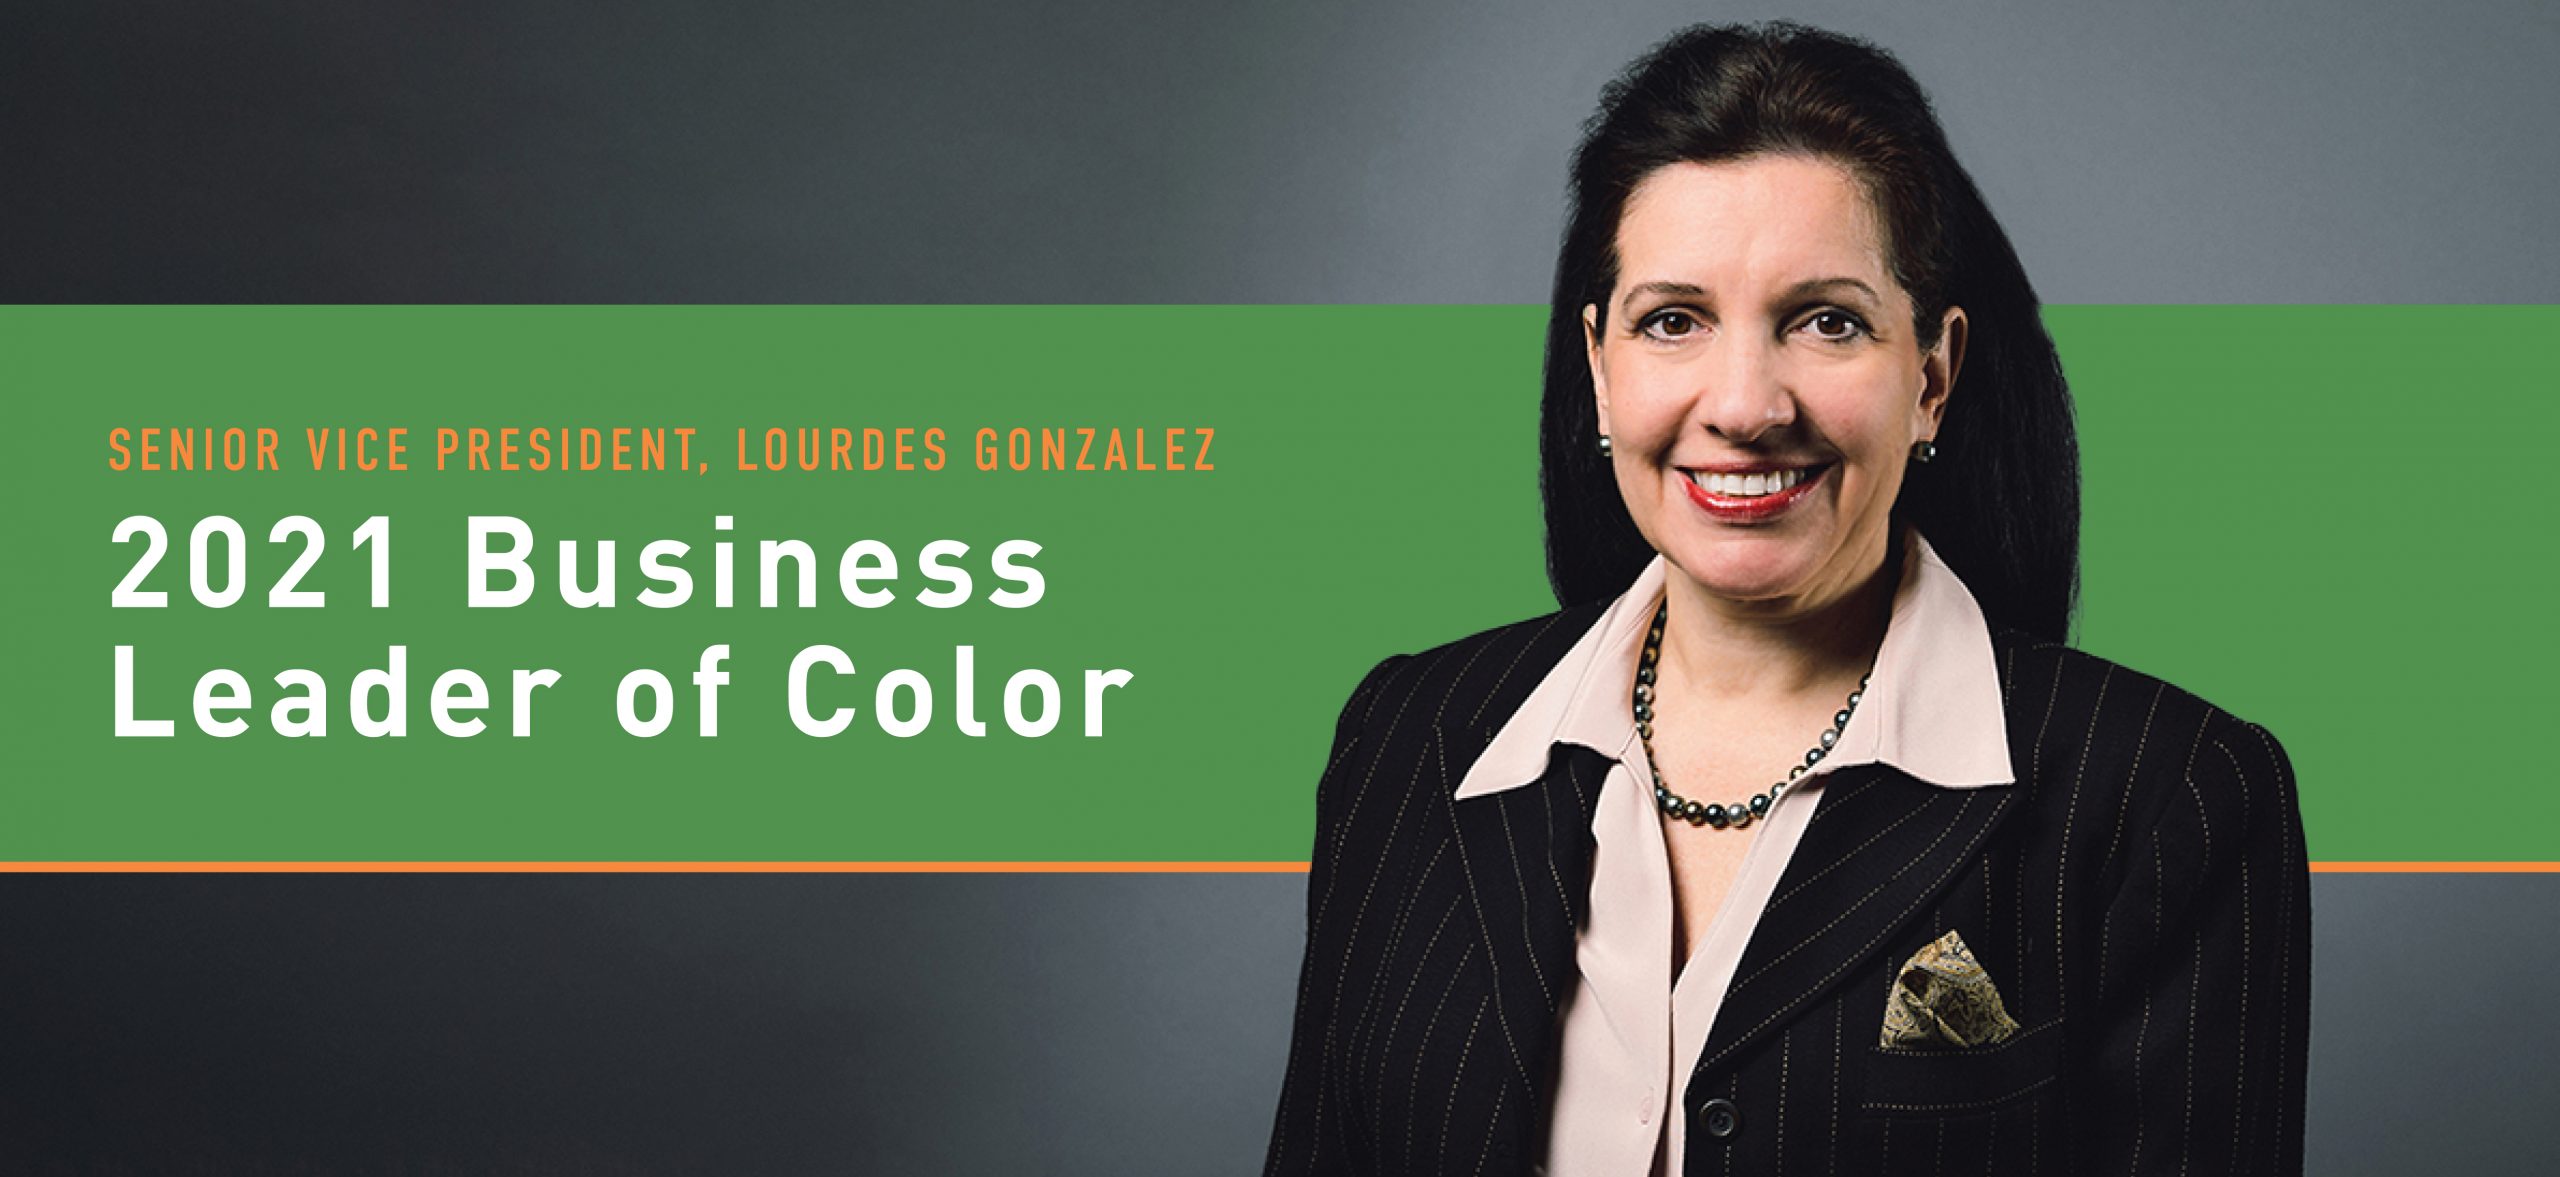 Senior Vice President, Lourdes Gonzalez, Recognized as a 2021 Business Leader of Color